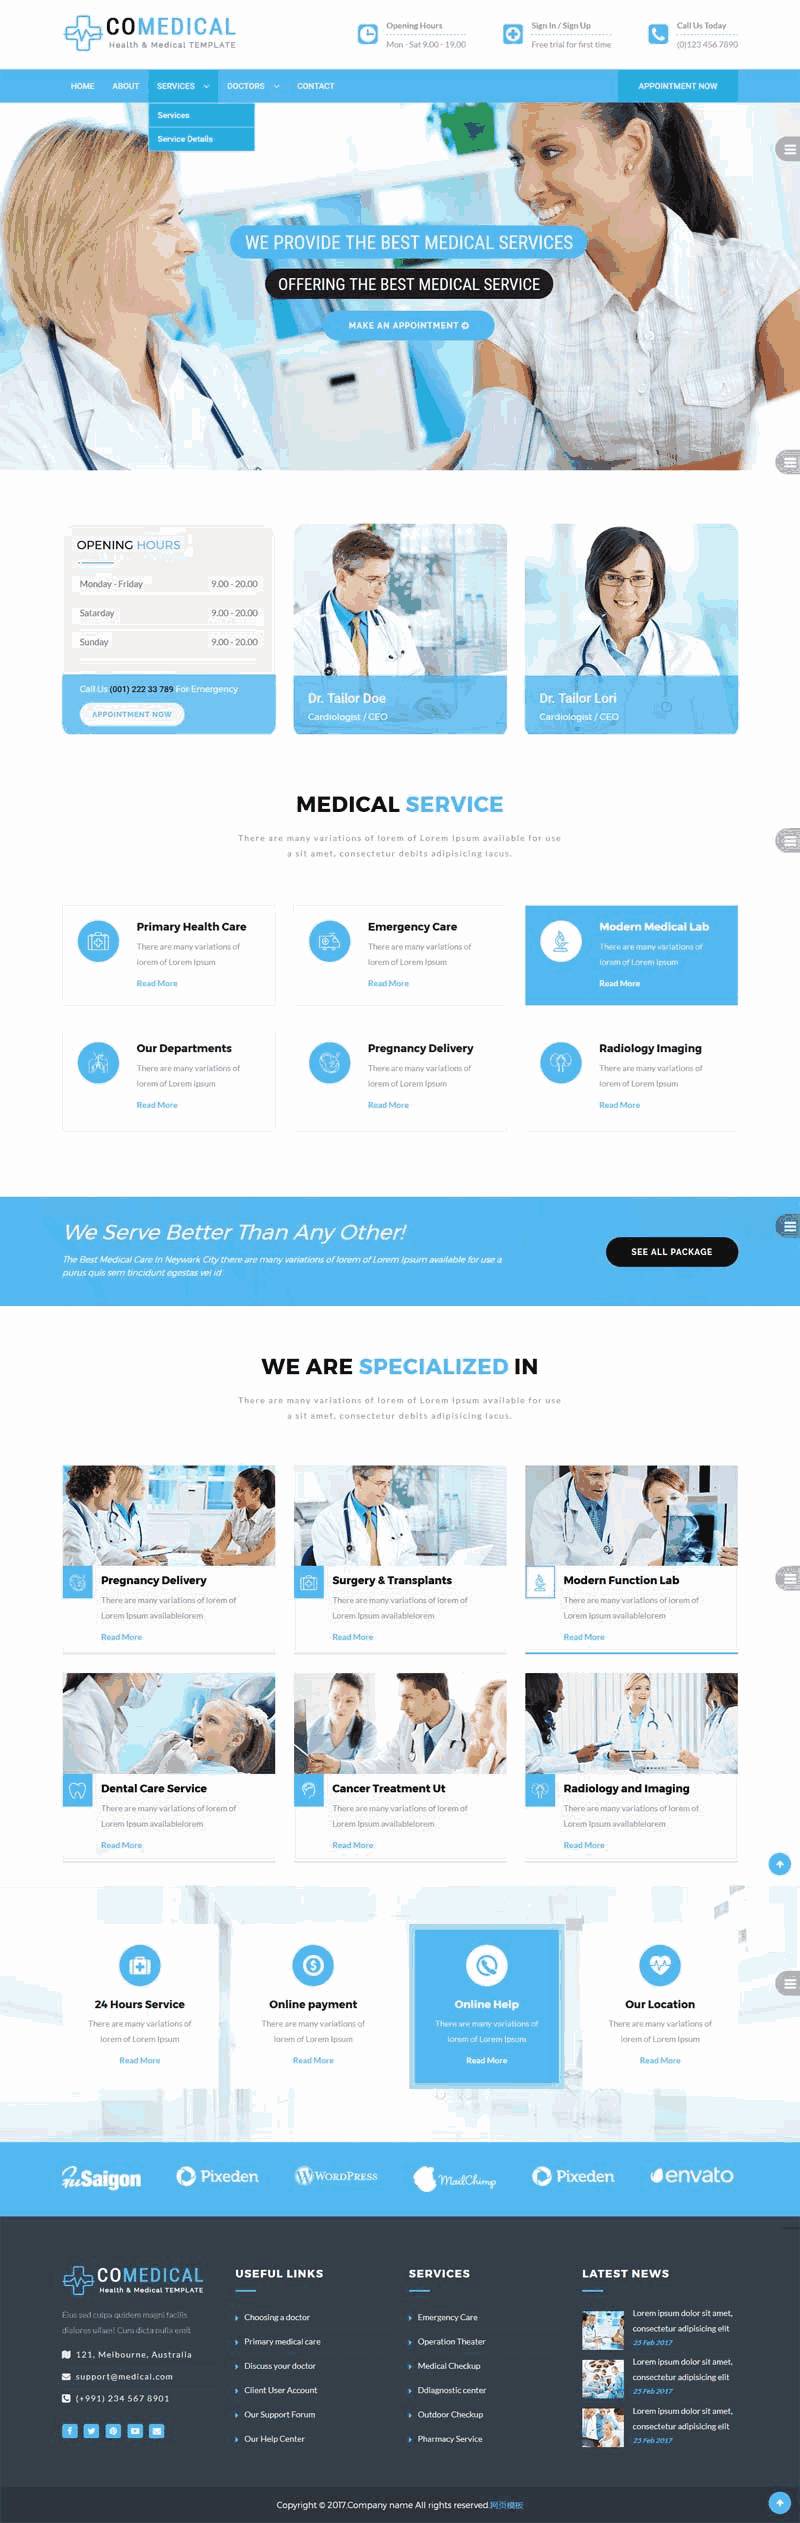 蓝色宽屏医院医疗机构医疗机构Wordpress模板主题